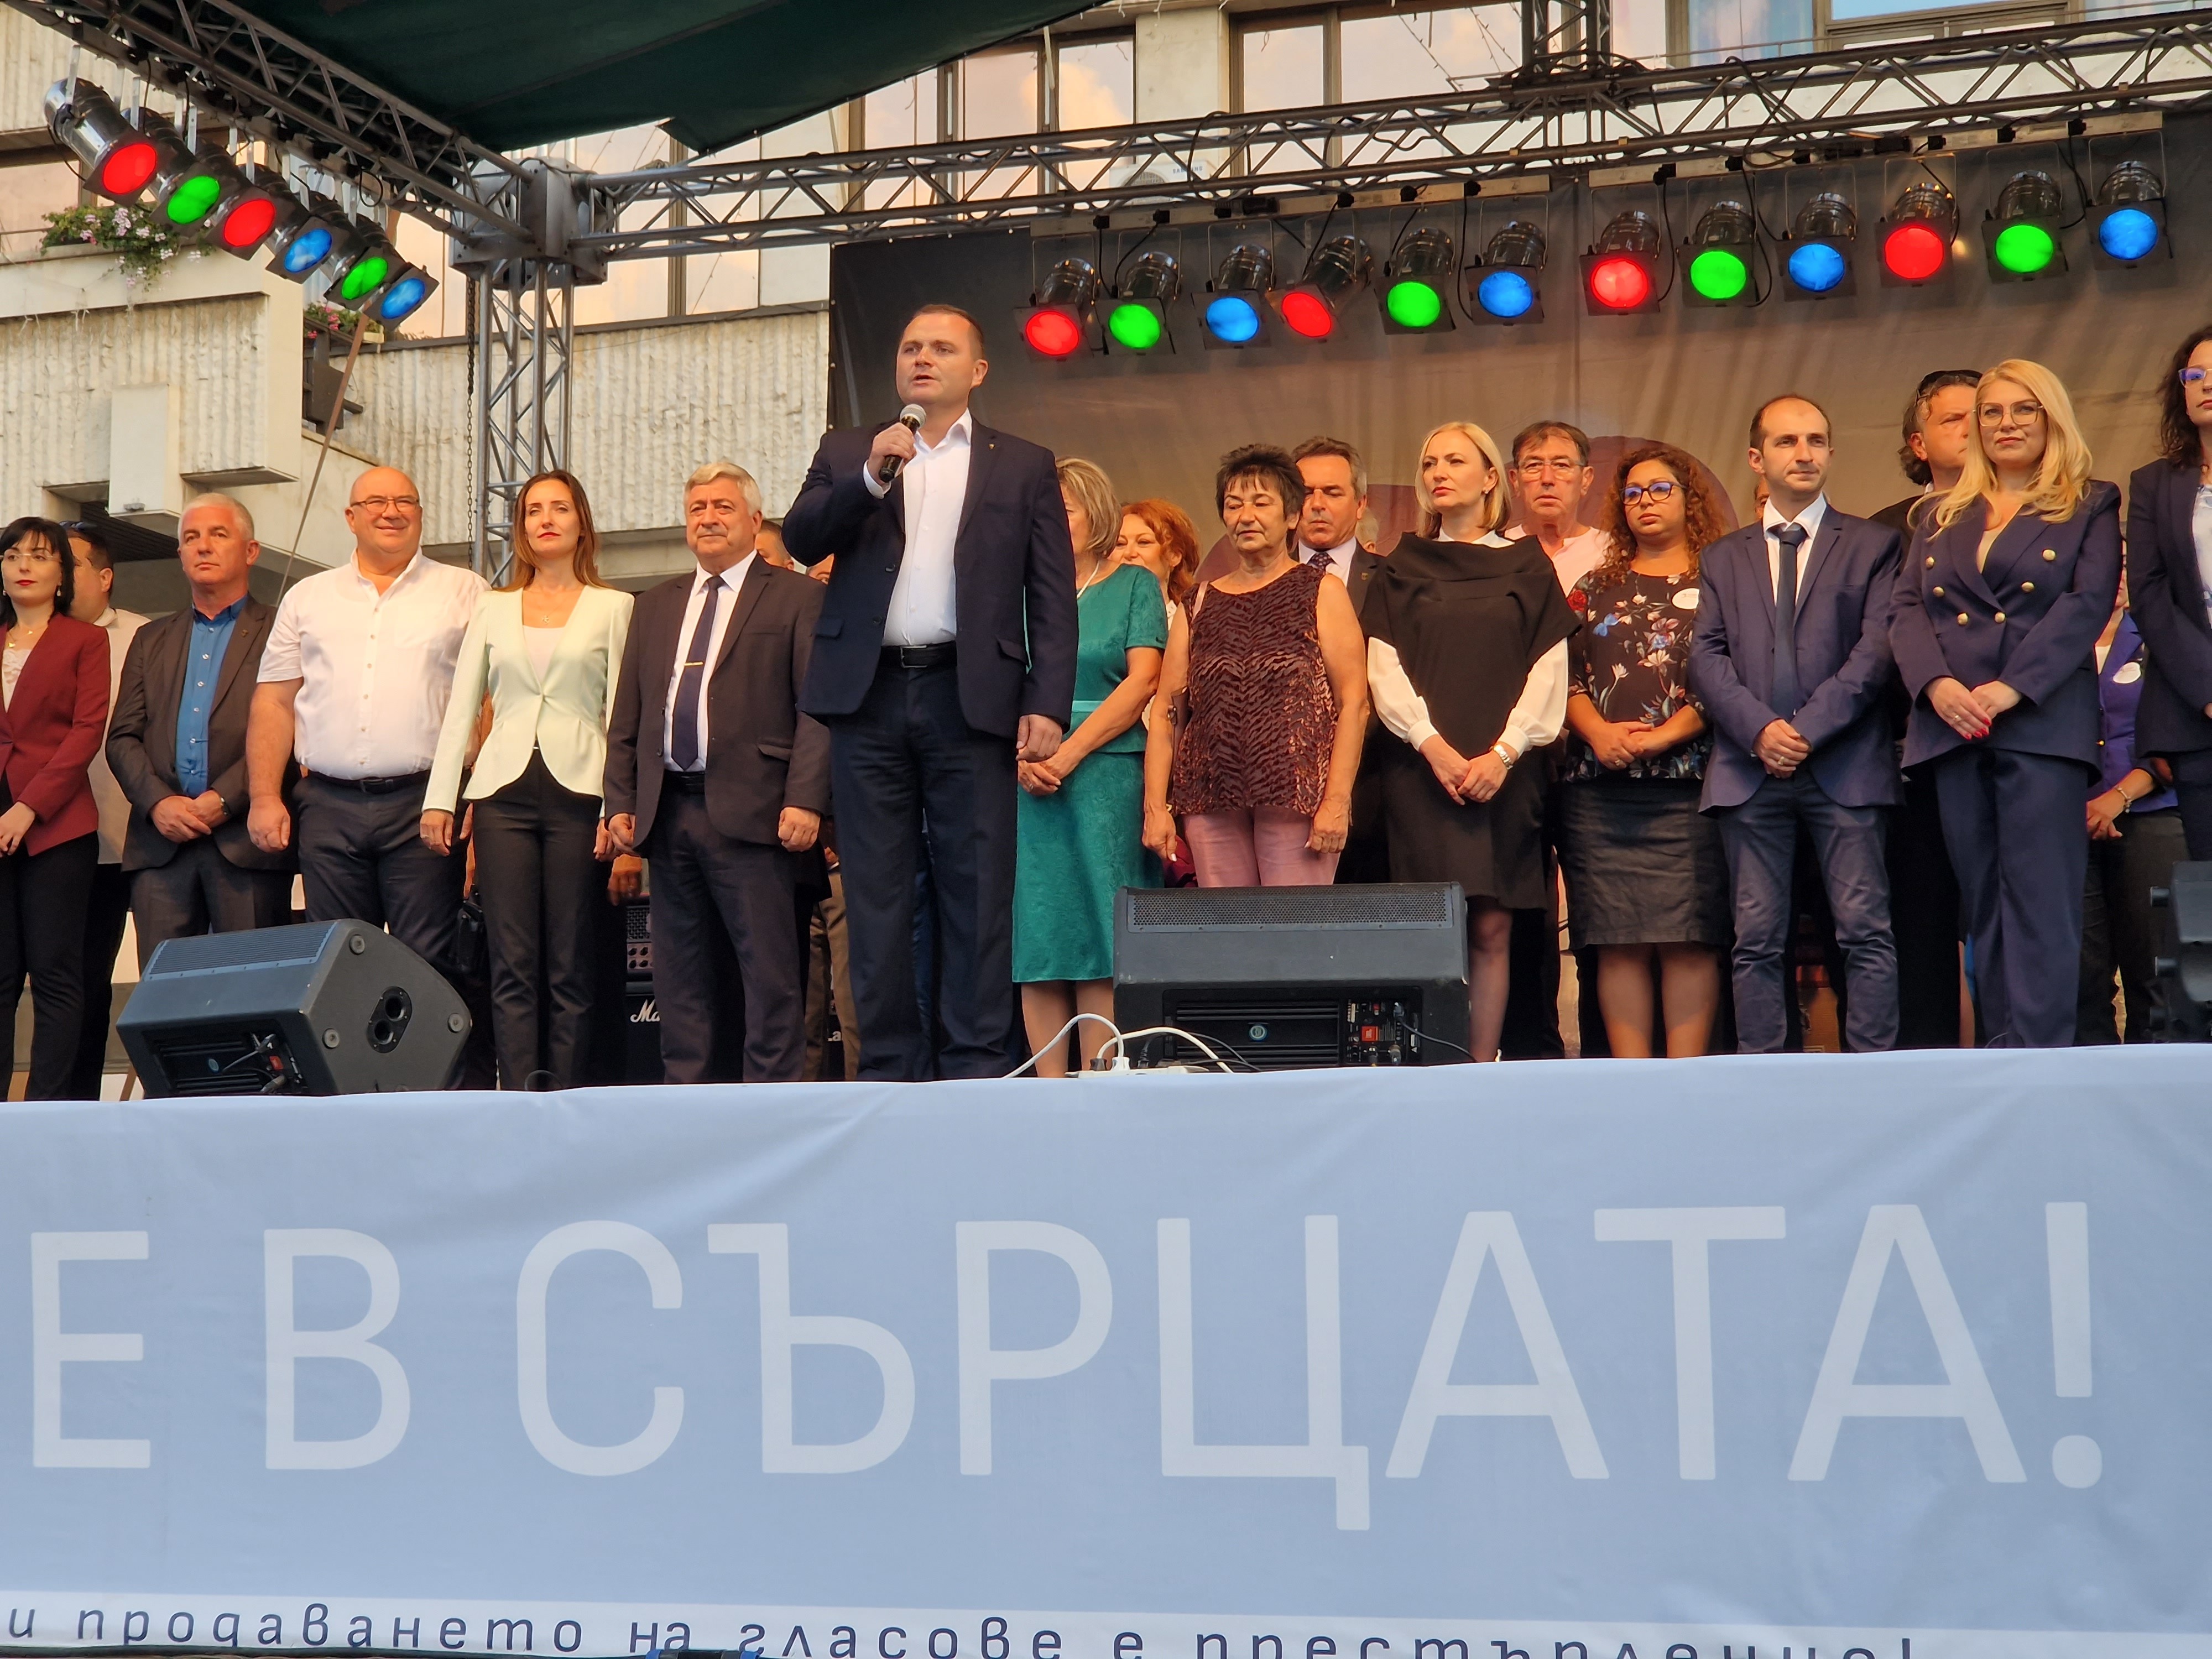 Голям концерт на любими групи постави началото на предизборната кампания за втори мандат на Пенчо Милков